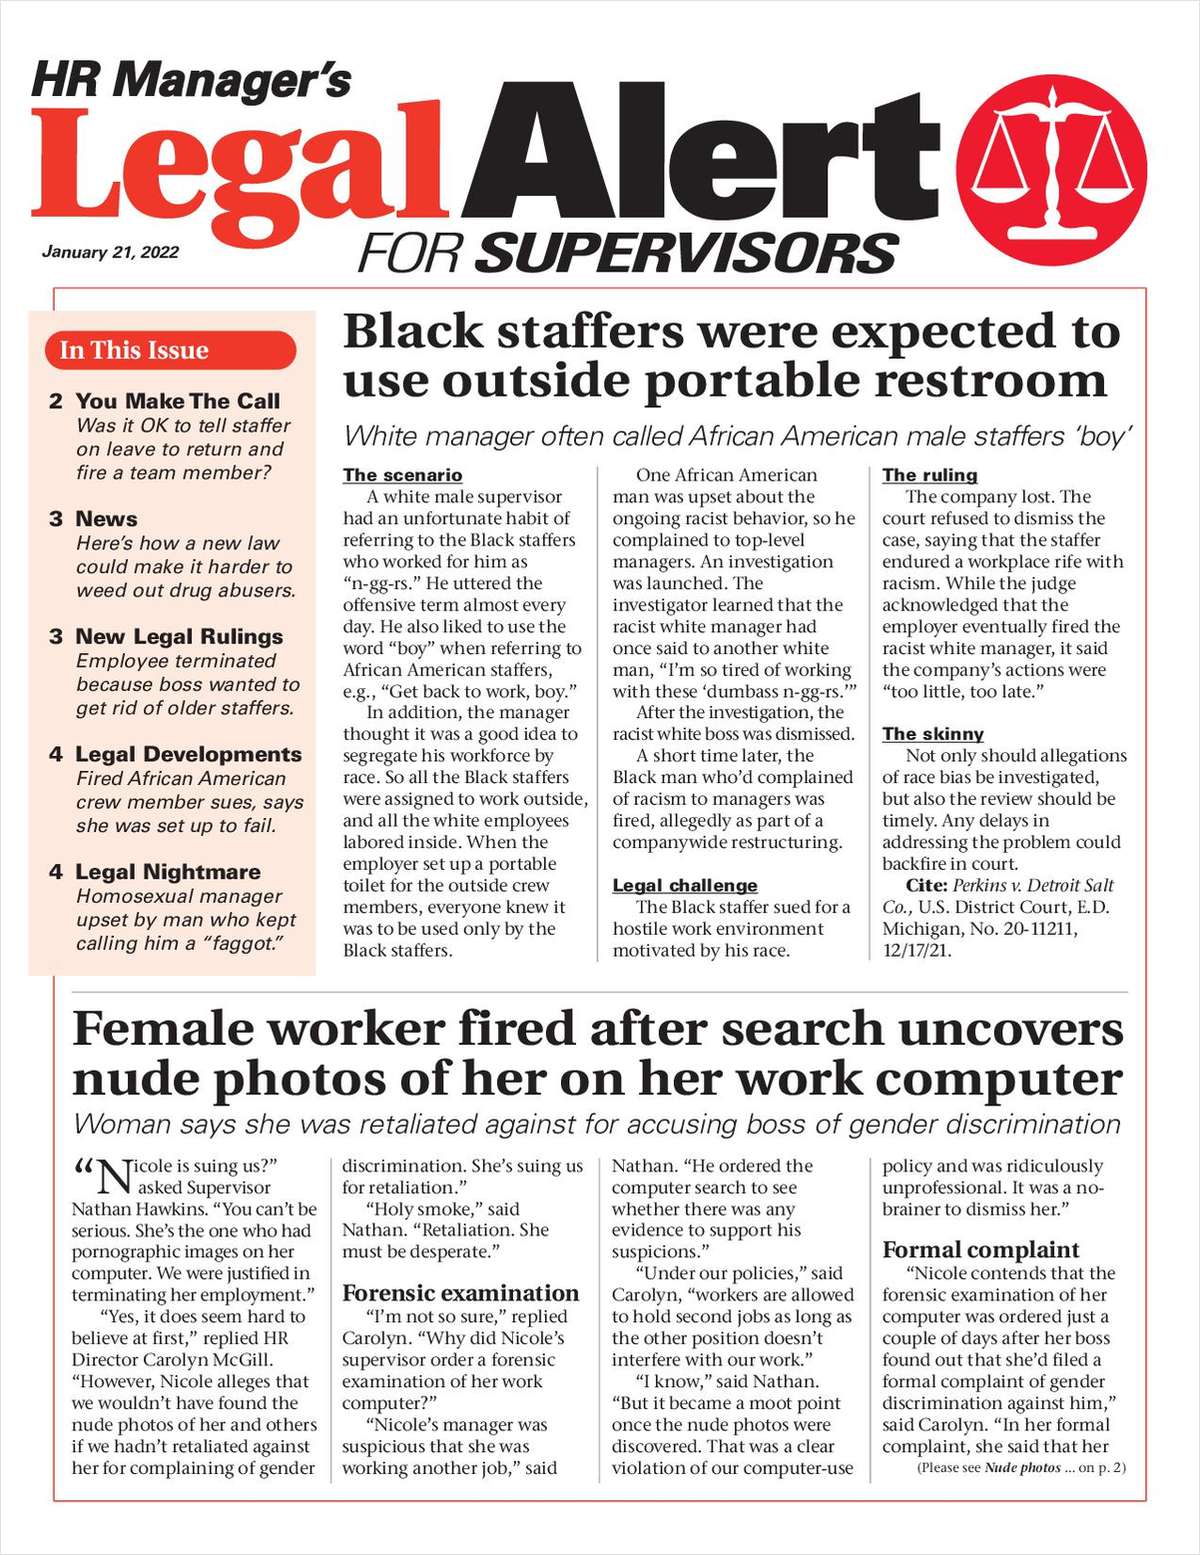 HR Manager's Legal Alert for Supervisors Newsletter: January 21 Edition